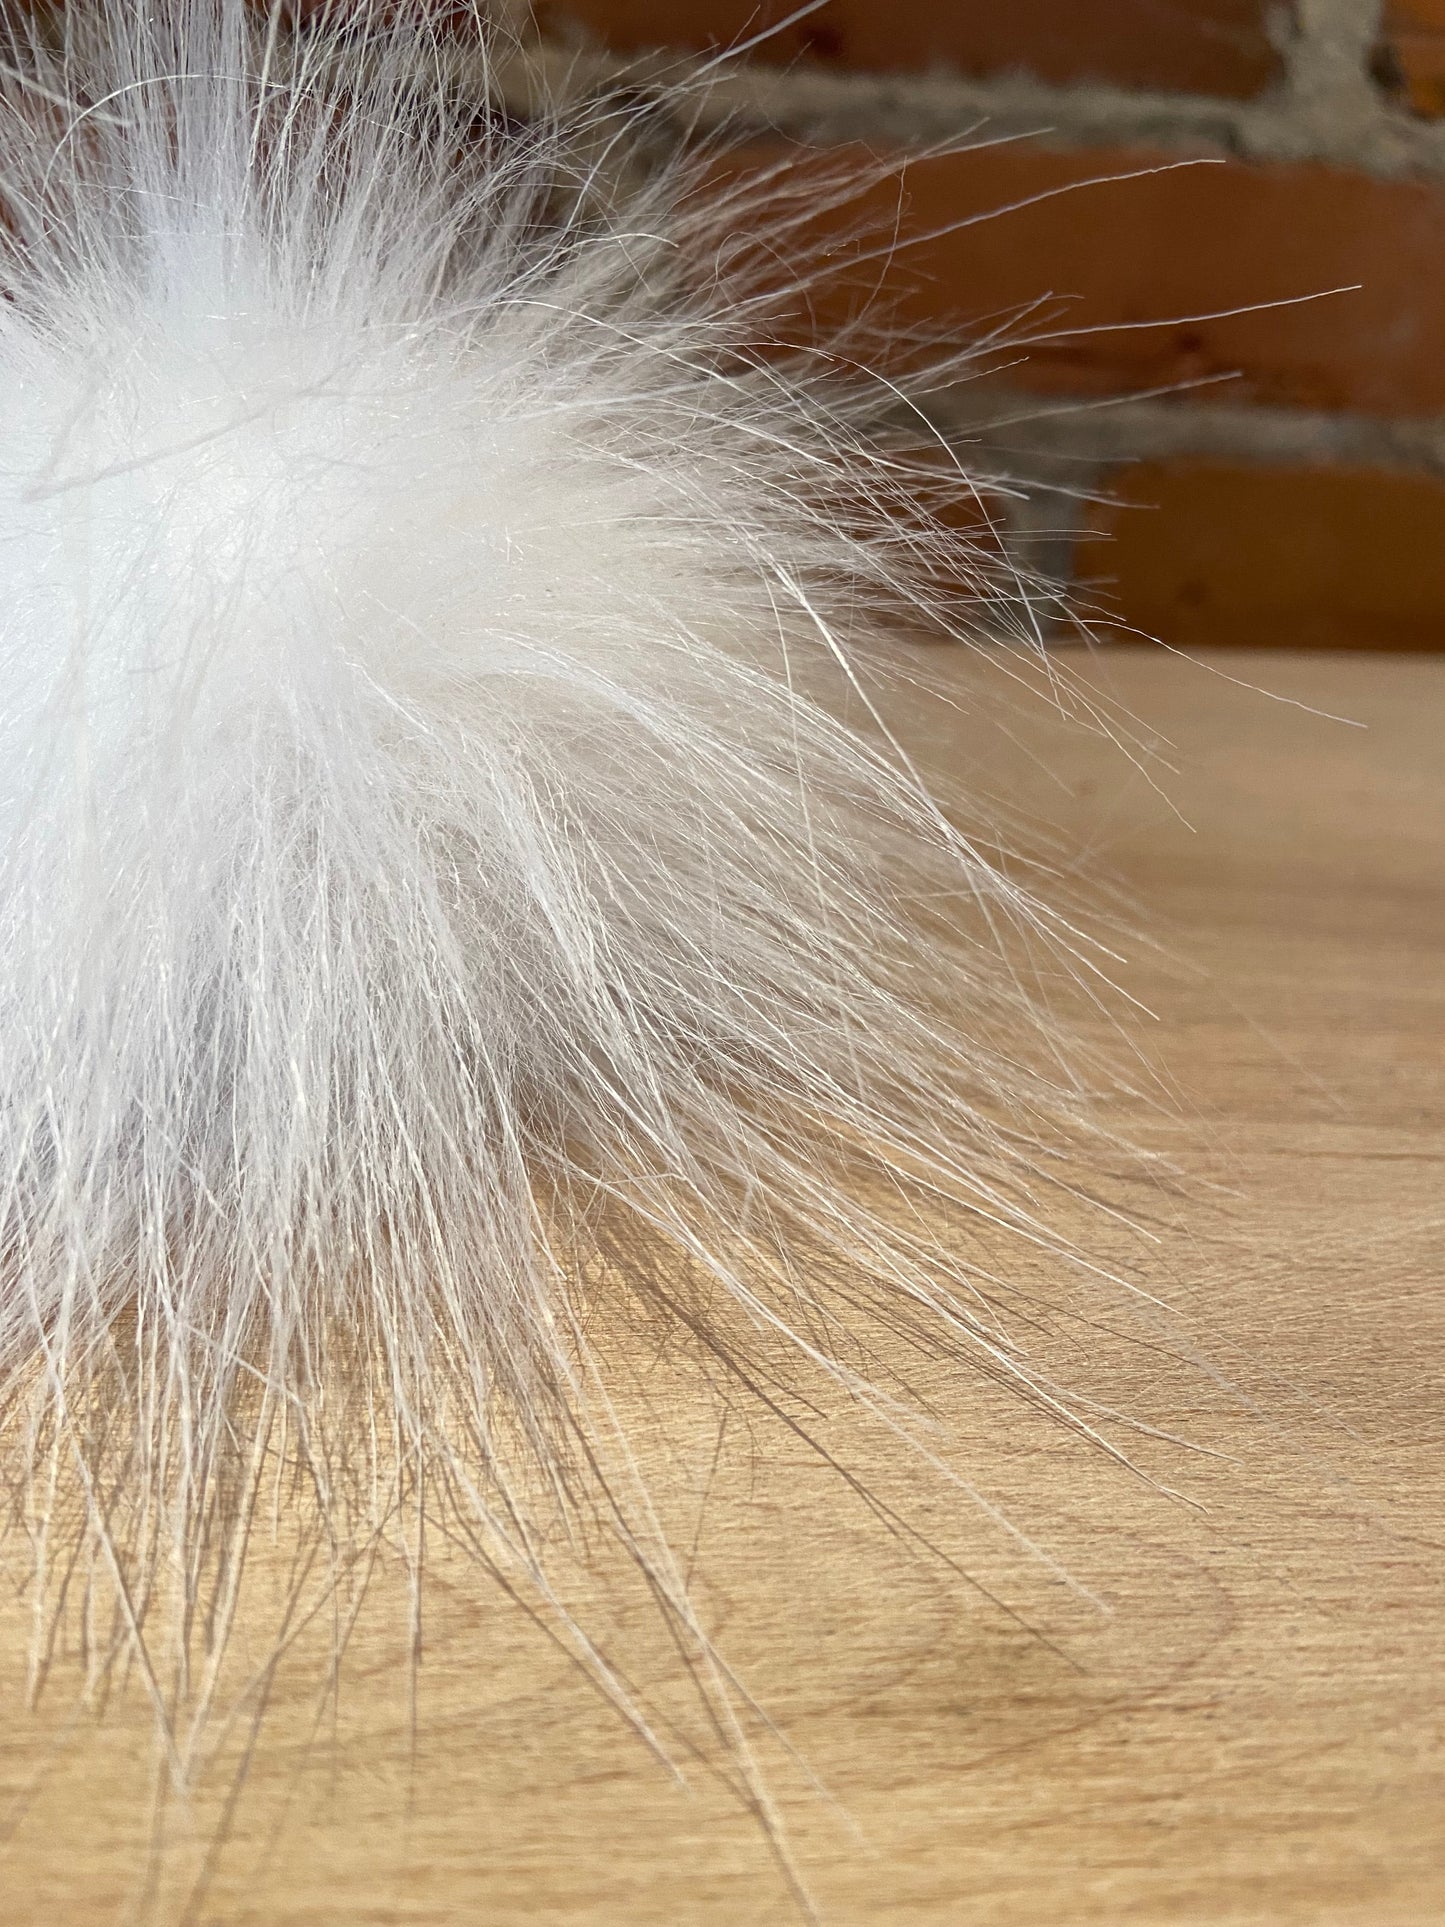 Pure Bright White Faux Fur Pom, 3.5 Inch